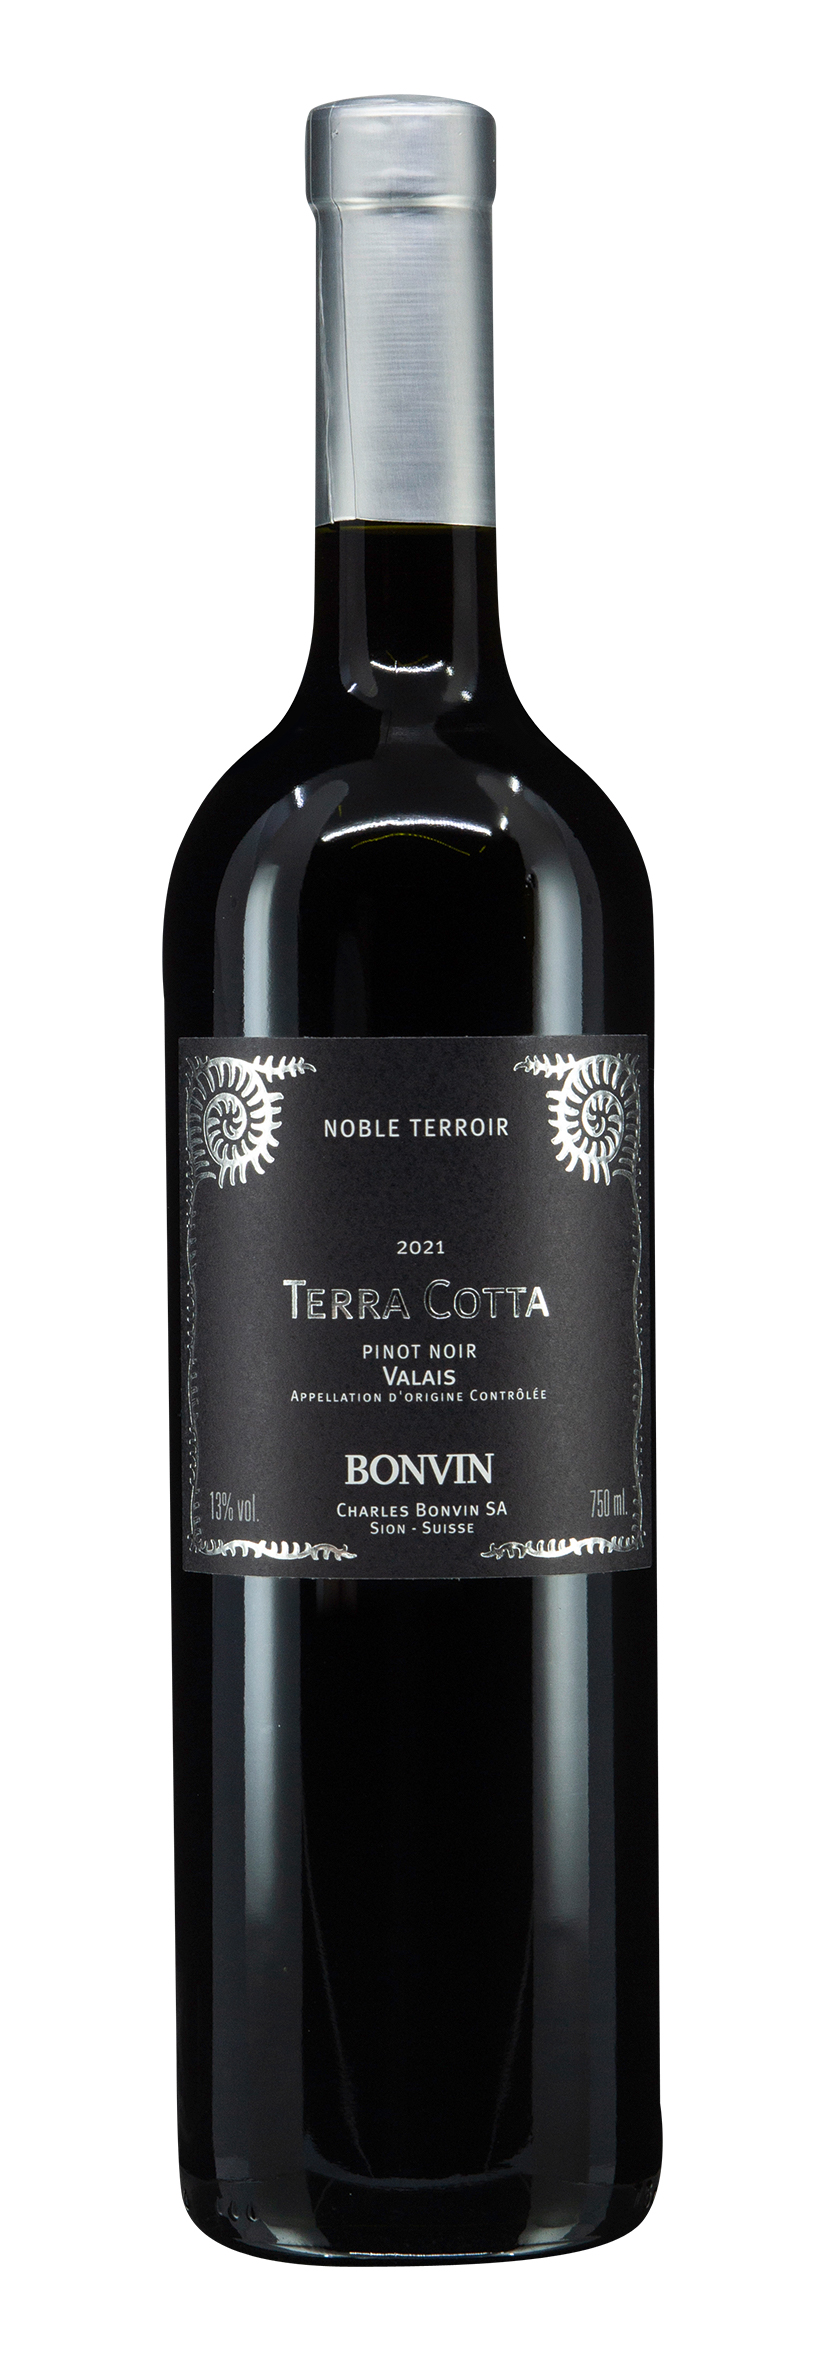 Valais AOC Pinot Noir Terra Cotta 2021